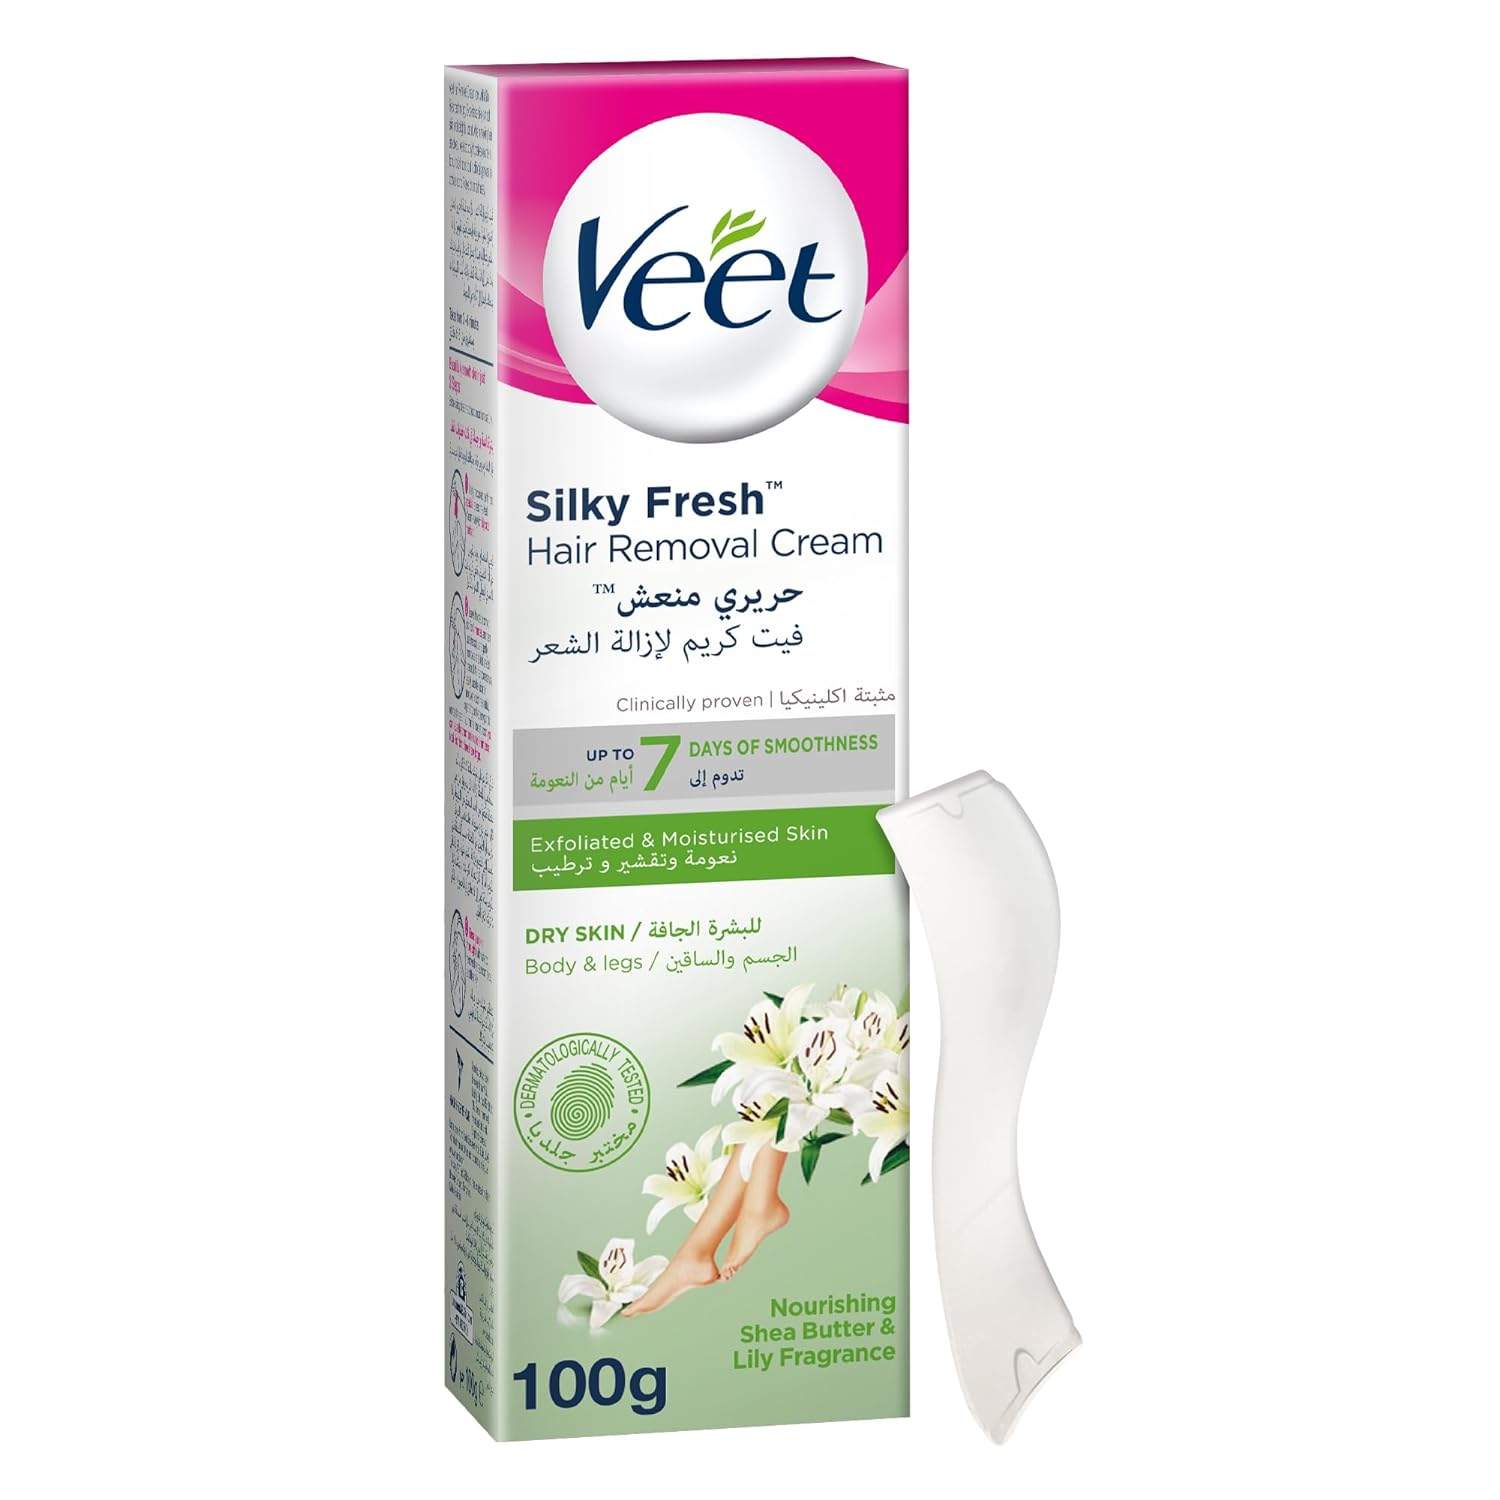 Veet Silky Fresh Hair Removal Cream for Dry Skin  